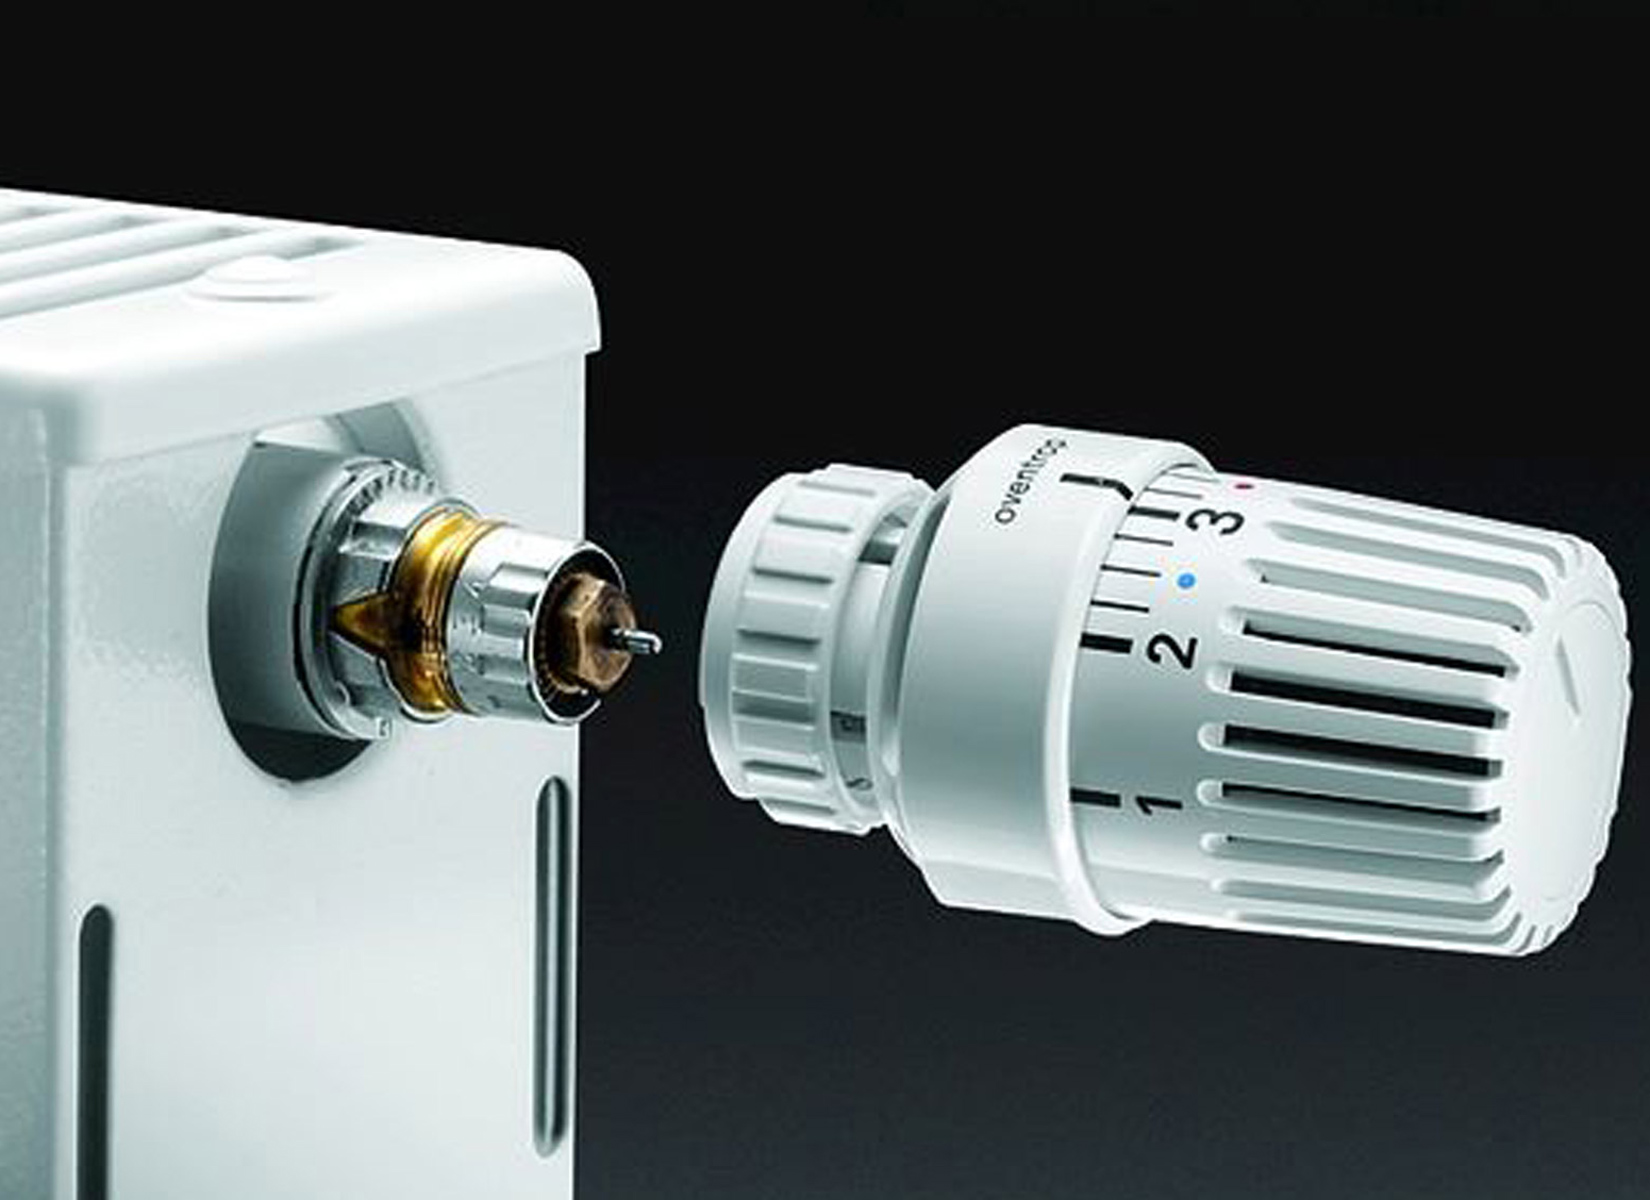 Радиатор отопления данфосс. Термоголовка Oventrop Uni LD 1011475. Регулятор отопления Danfoss с термоголовкой. Терморегулятор Данфосс для радиатора отопления. Кран для термоголовки для радиатора отопления Данфосс.